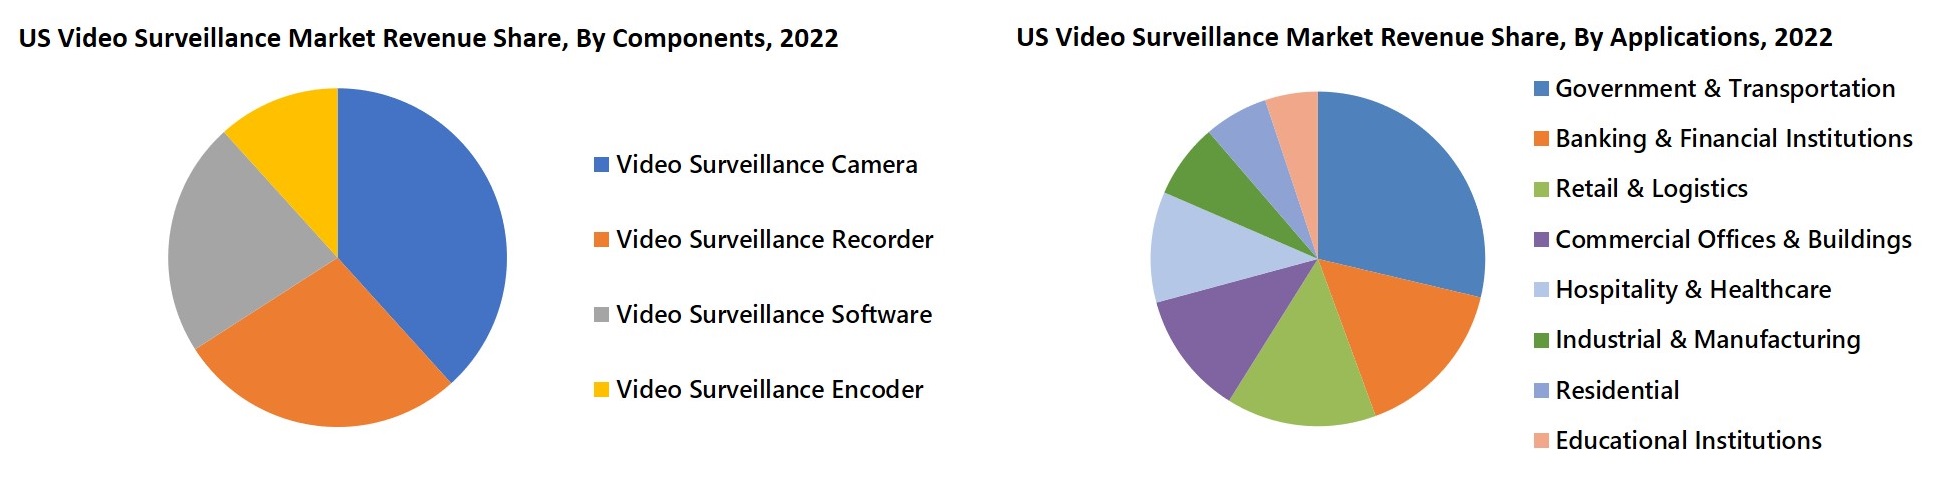 US Video Surveillance Market Revenue Share